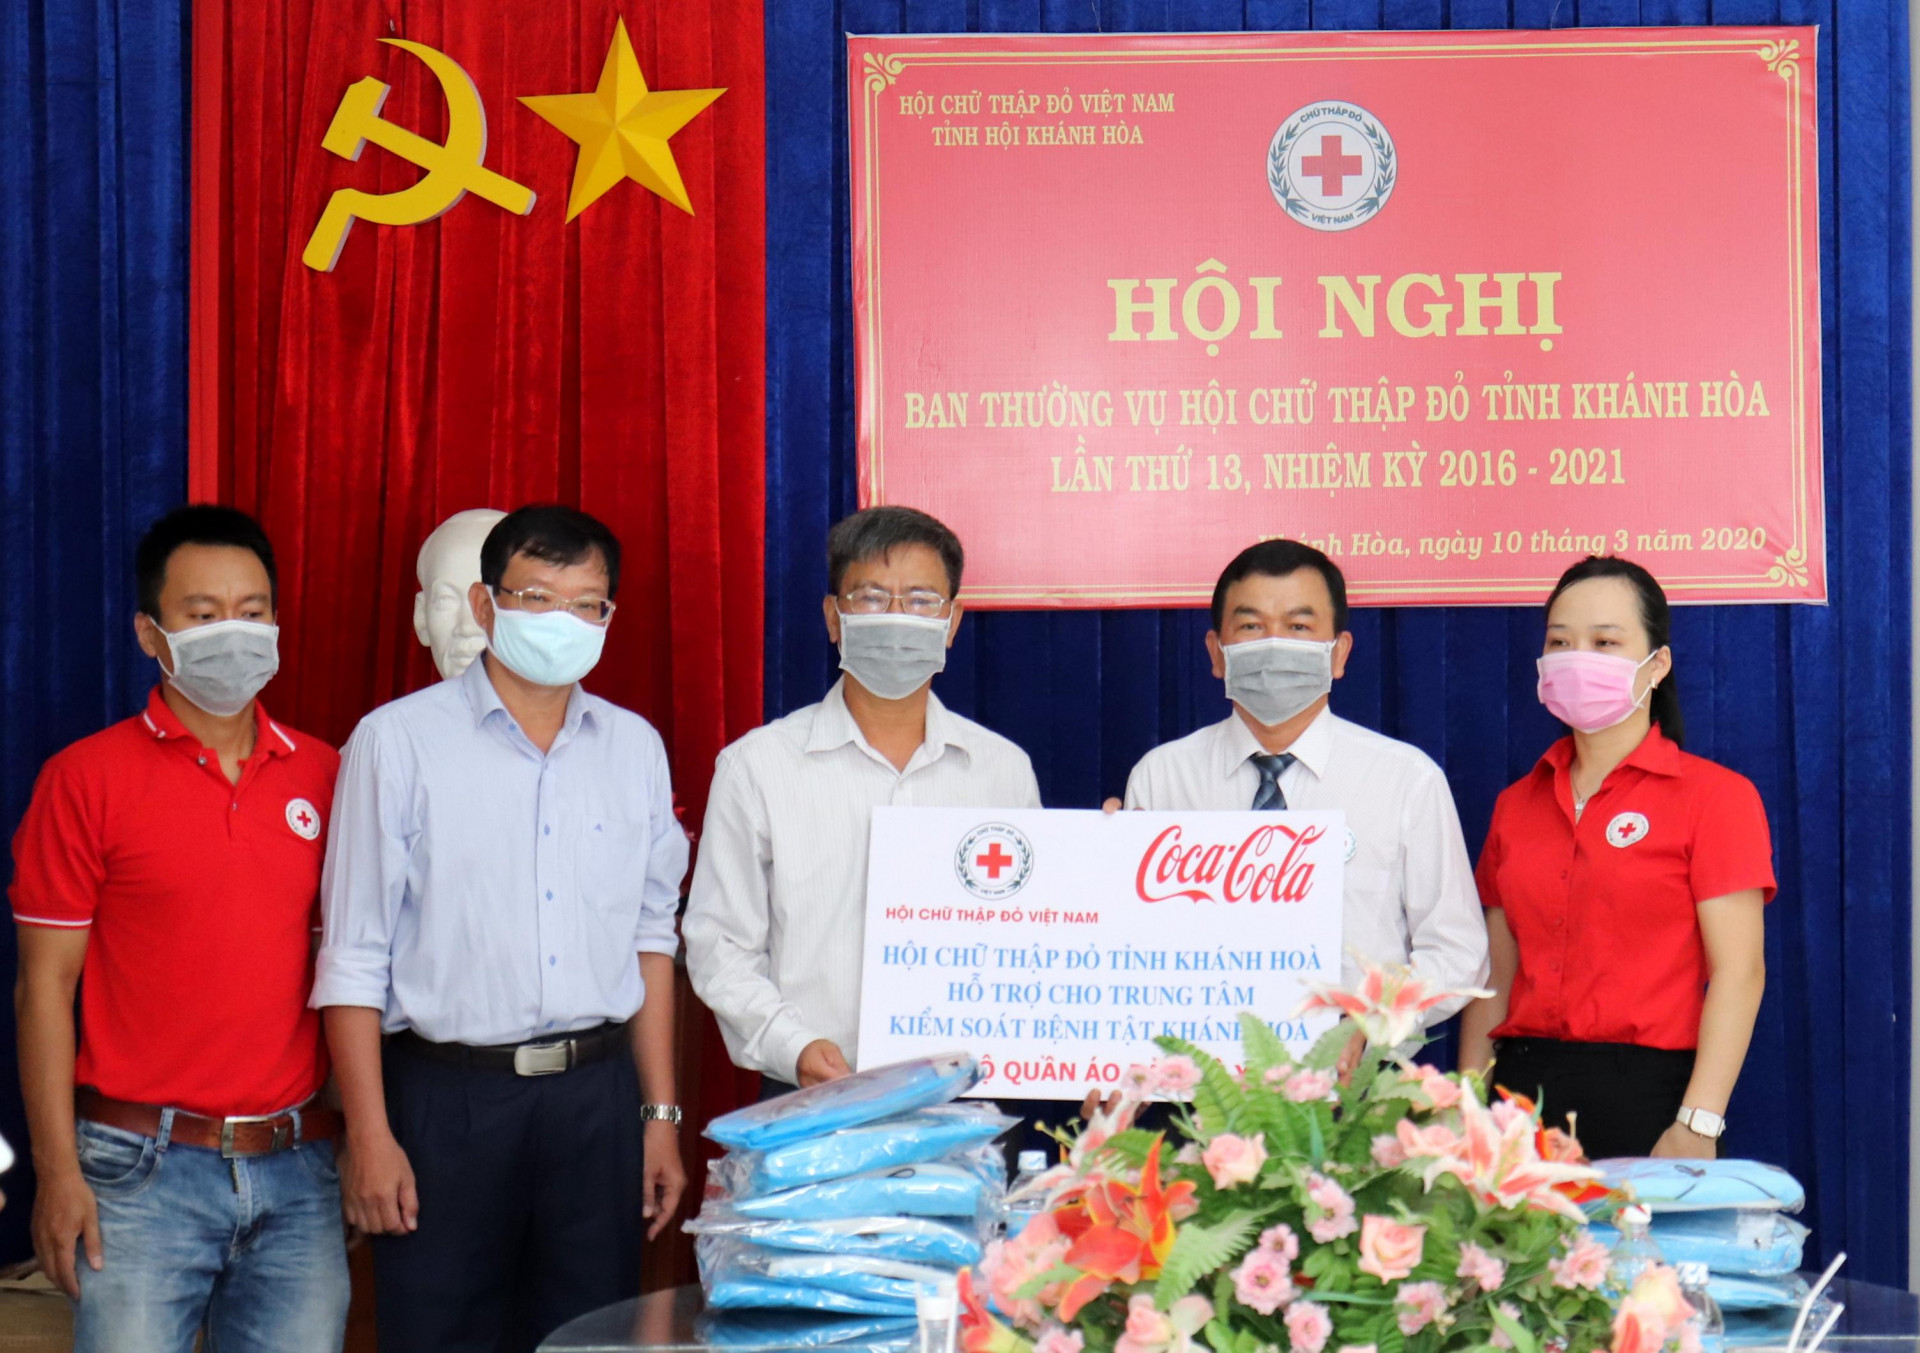 Lãnh đạo Hội Chữ thập đỏ tỉnh Khánh Hoà trao tặng đồ bảo hộ y tế cho Trung tâm Kiểm soát bệnh tật tỉnh